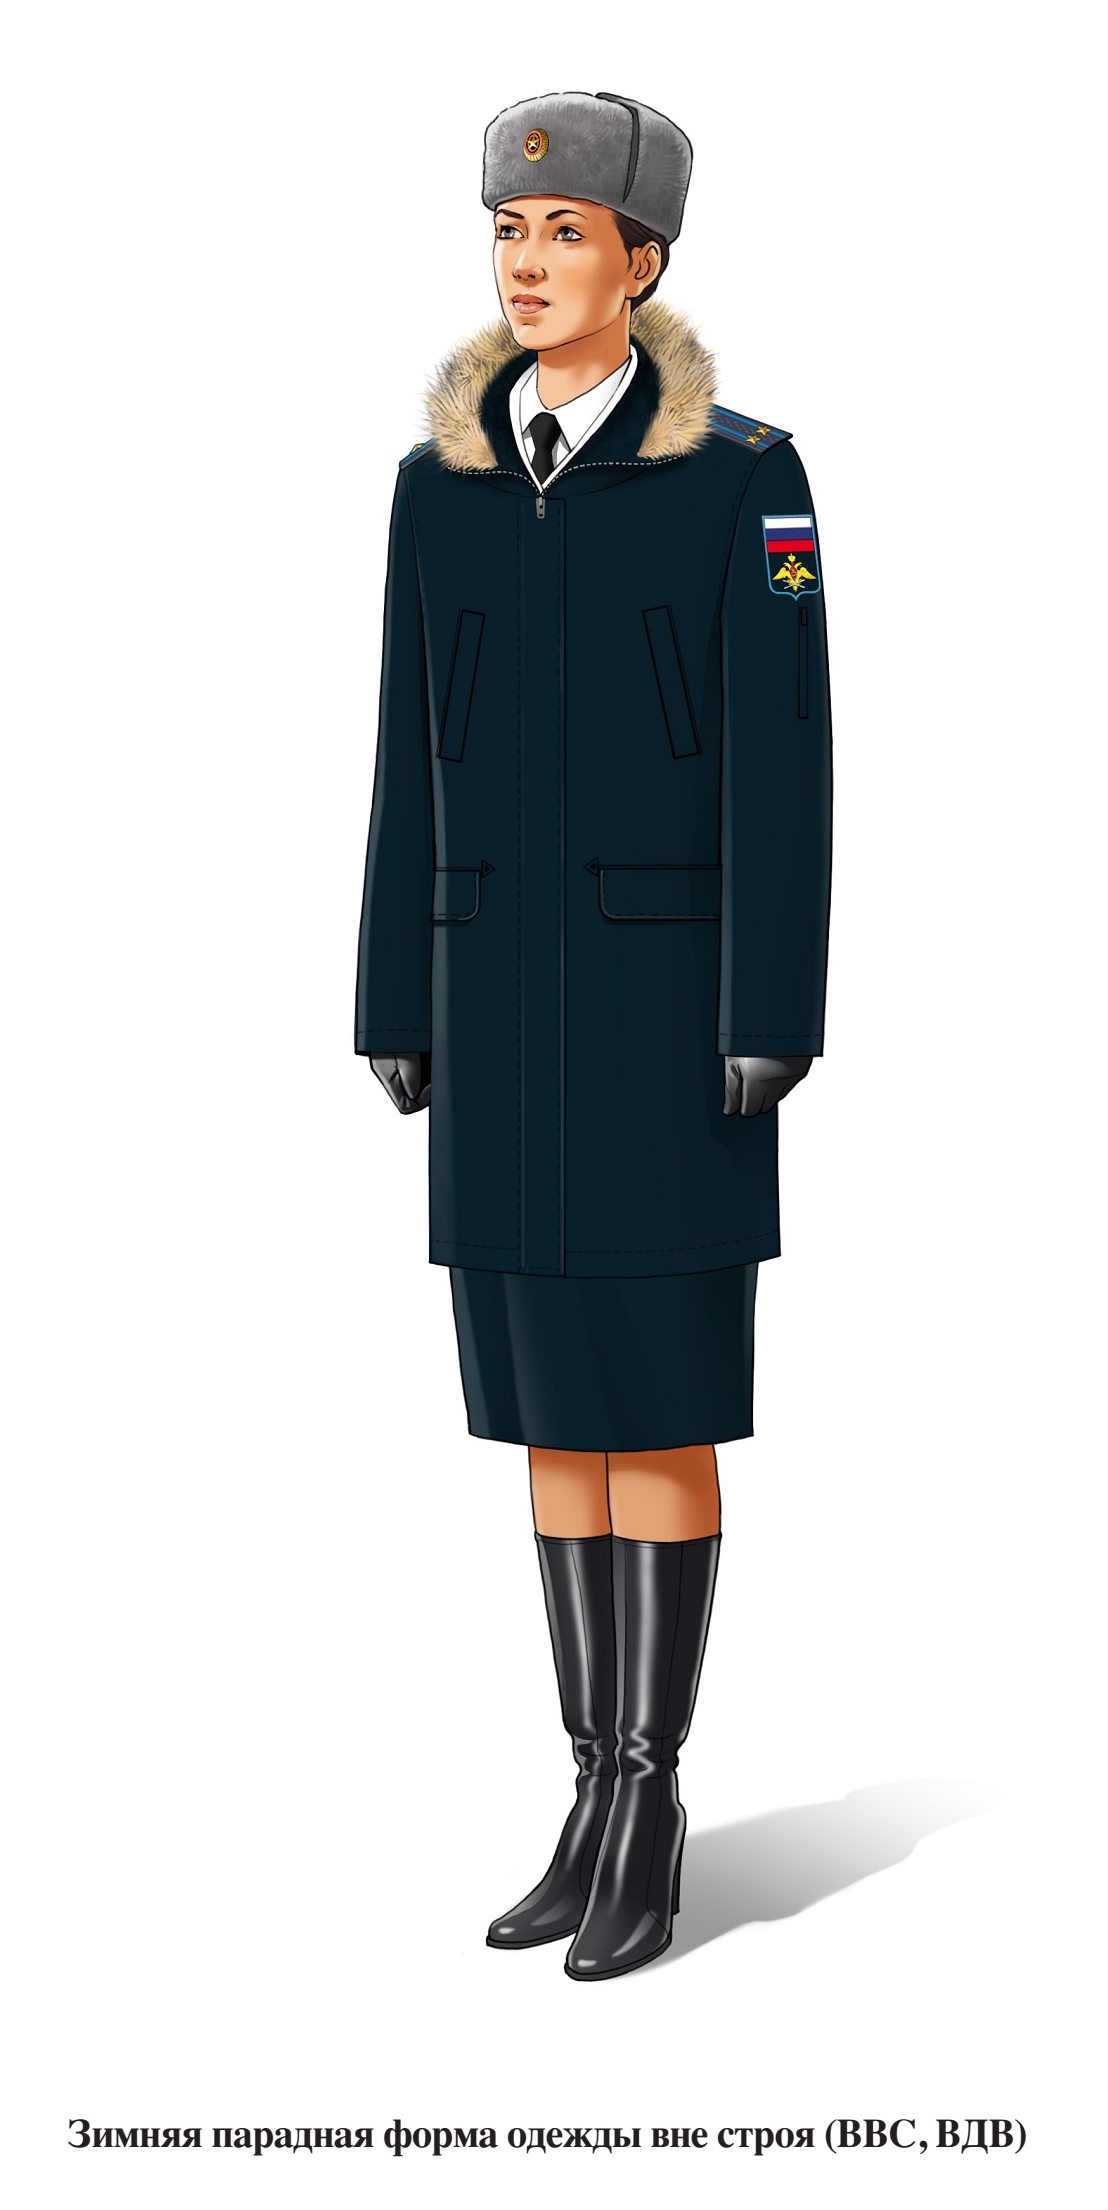 Зимняя парадная форма военнослужащих женского пола ВВС и ВДВ вне строя